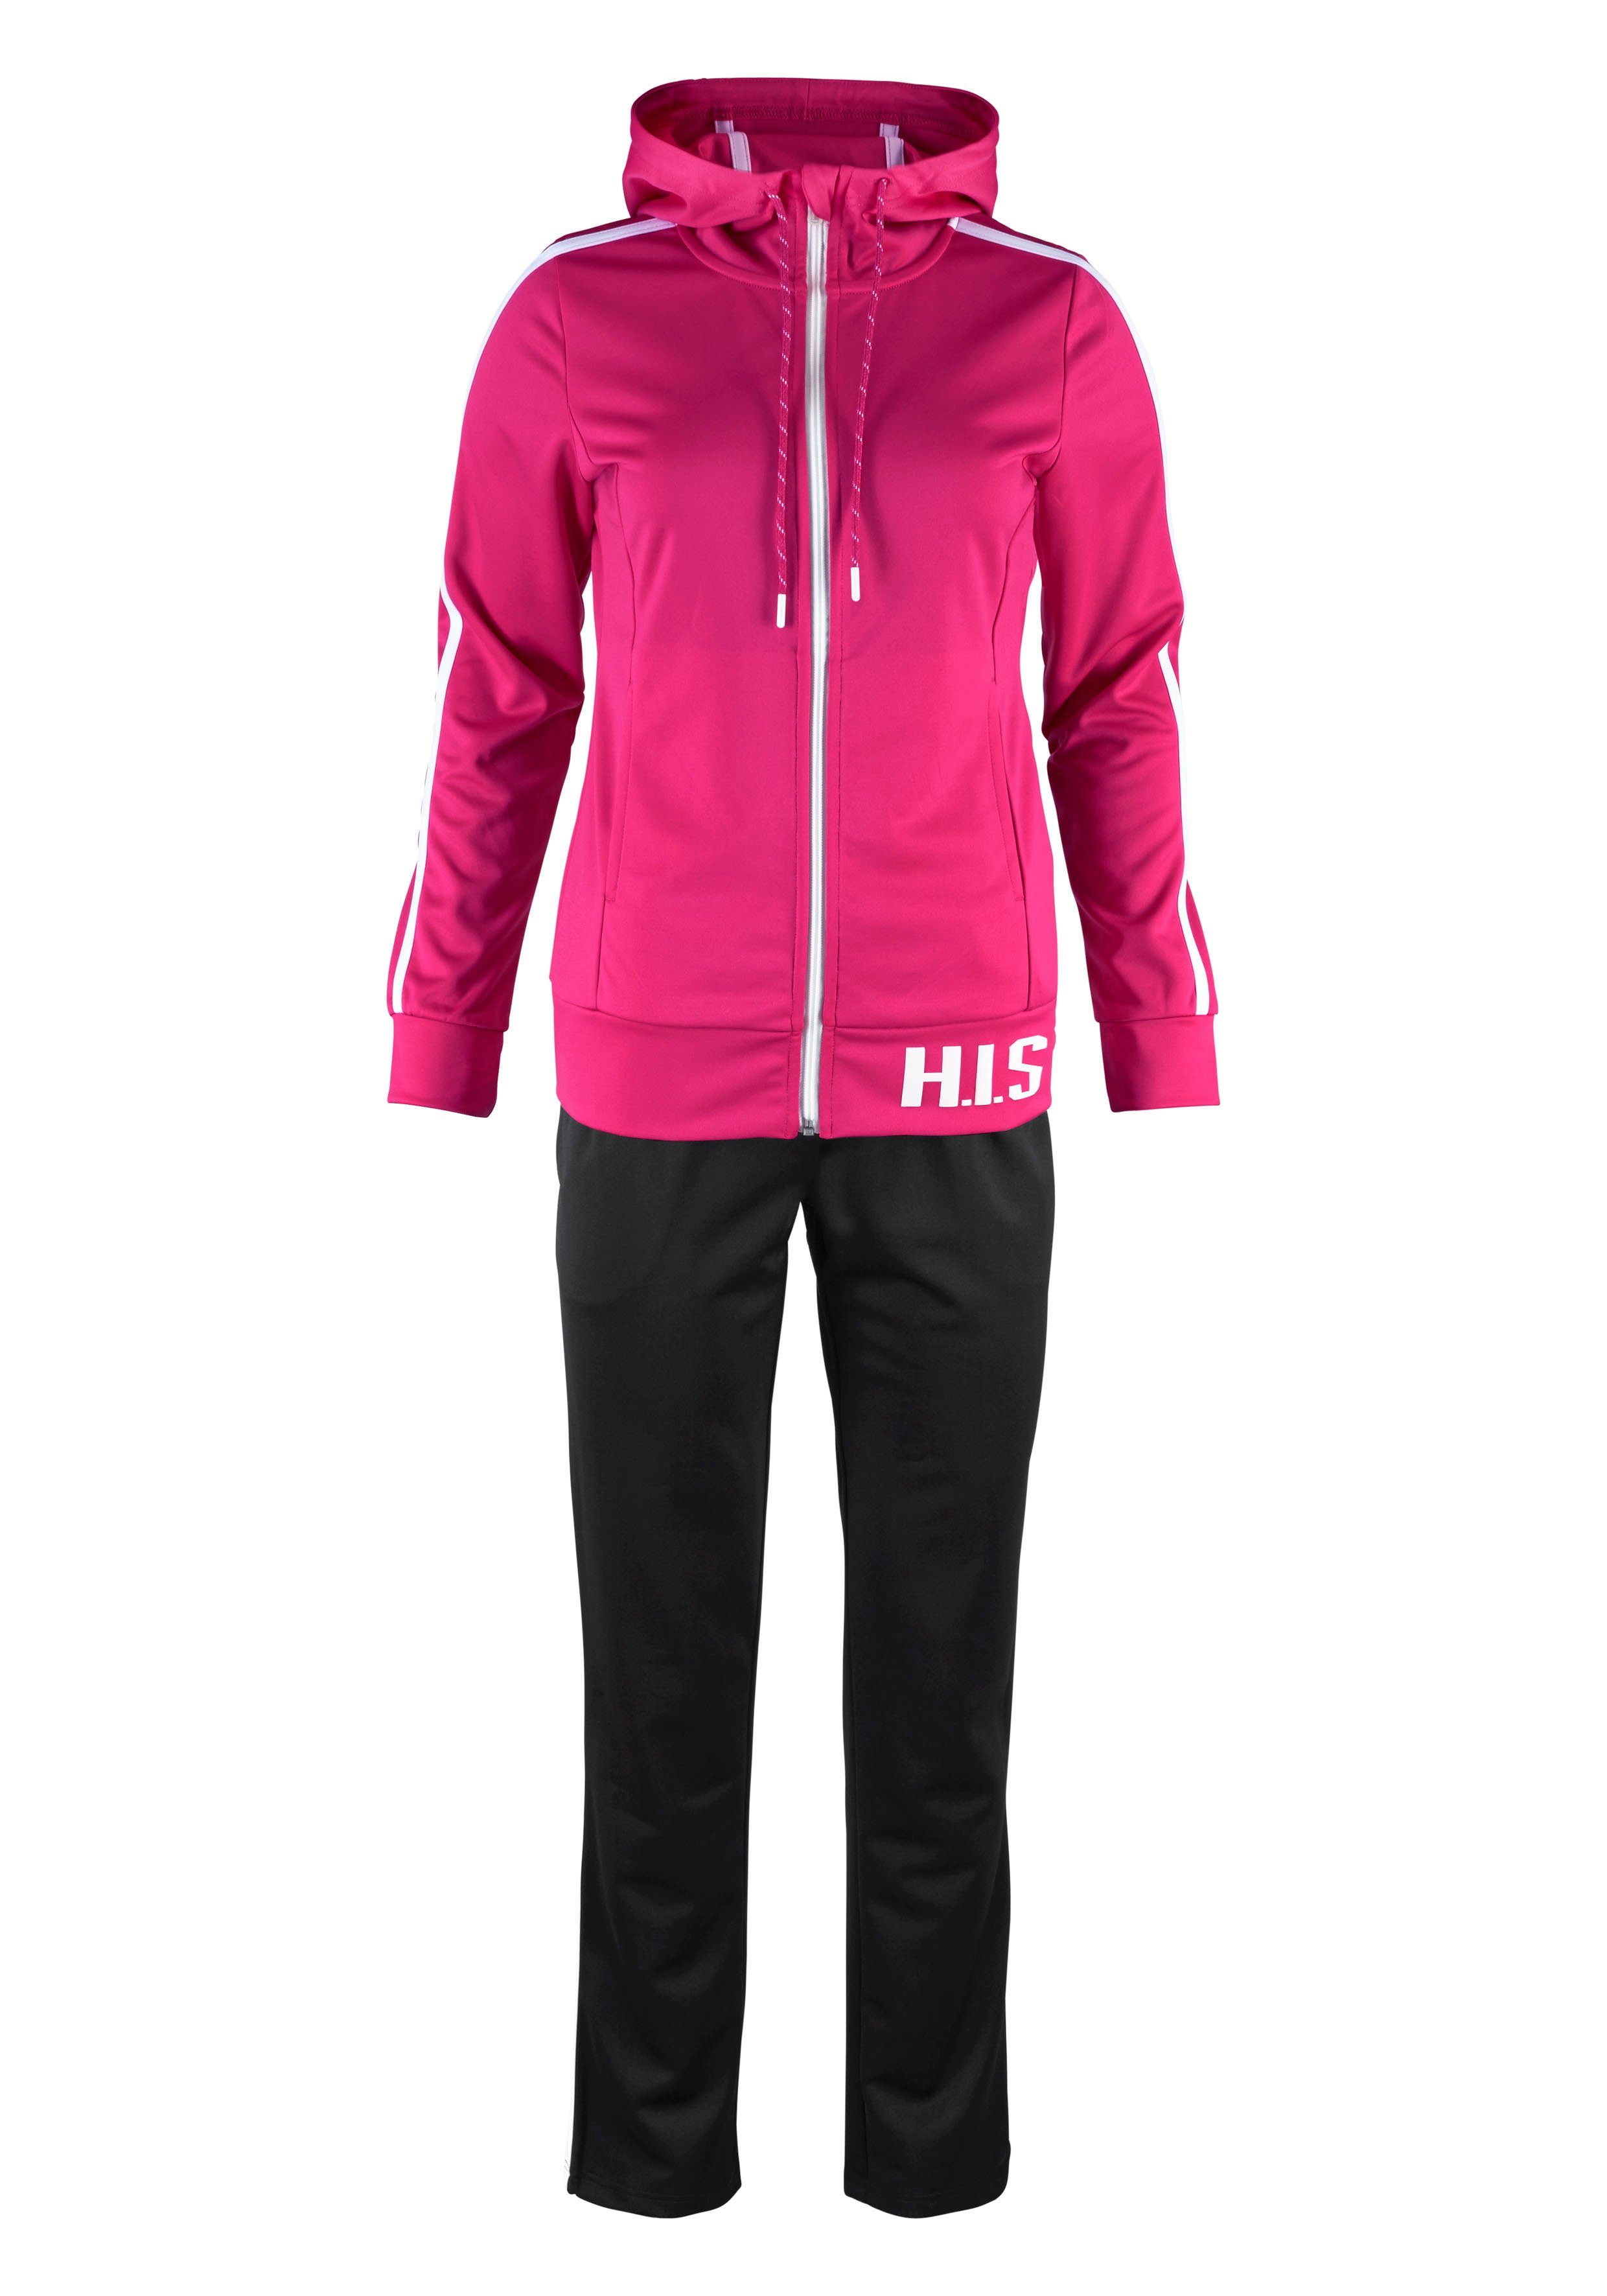 H.I.S Trainingsanzug (Set, aus nachhaltigem 2-tlg) (Trainingsanzug Pink Material)